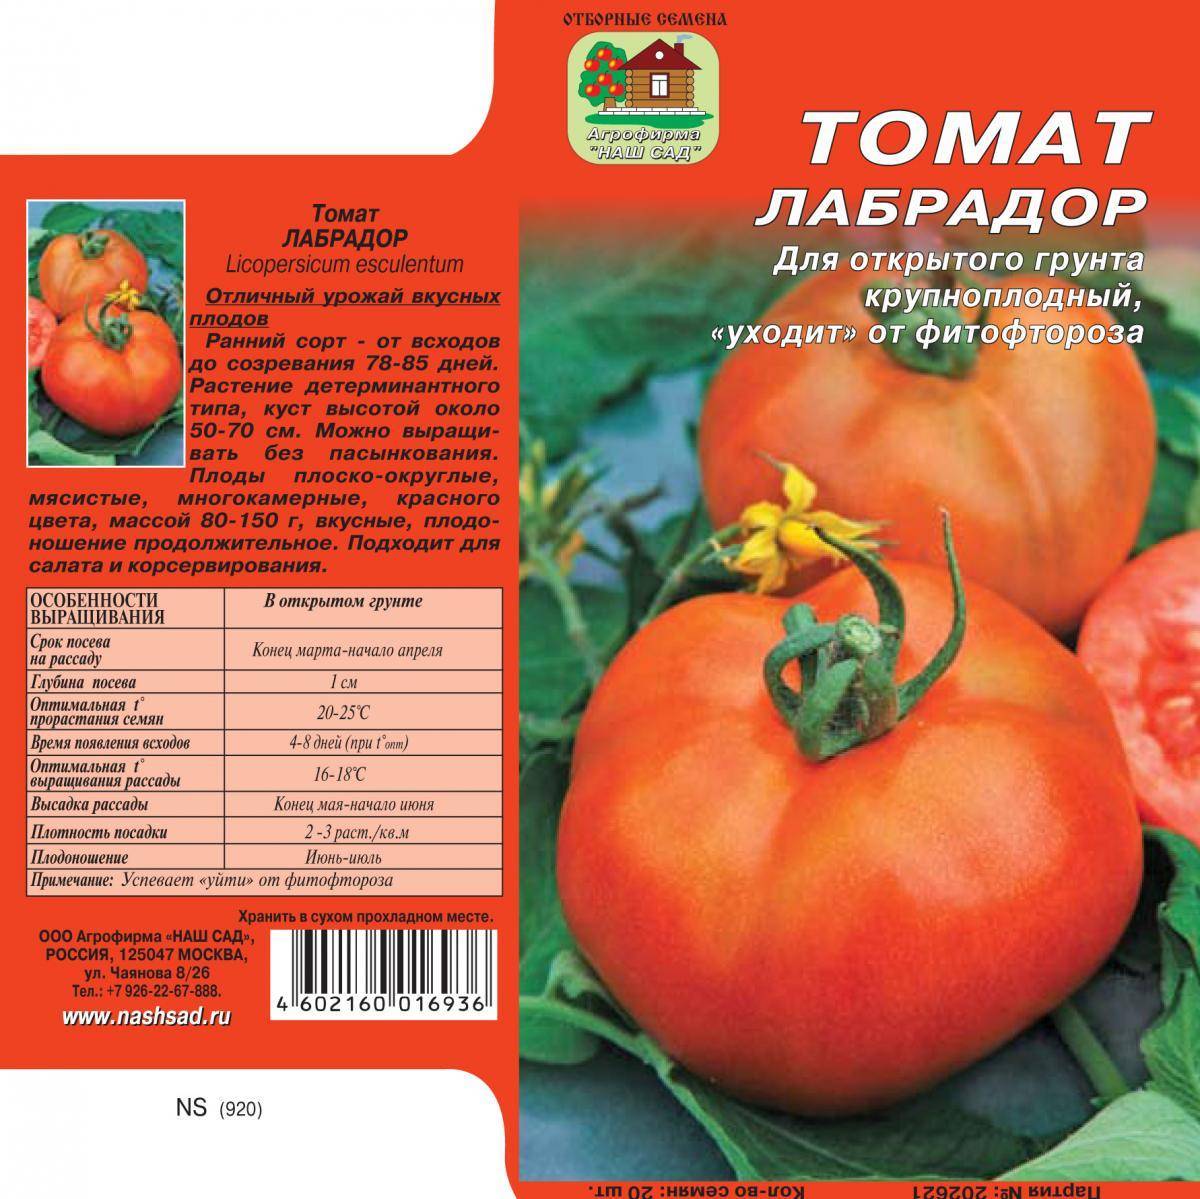 Лучшие сорта томатов для подмосковья: урожайные и устойчивые к болезням